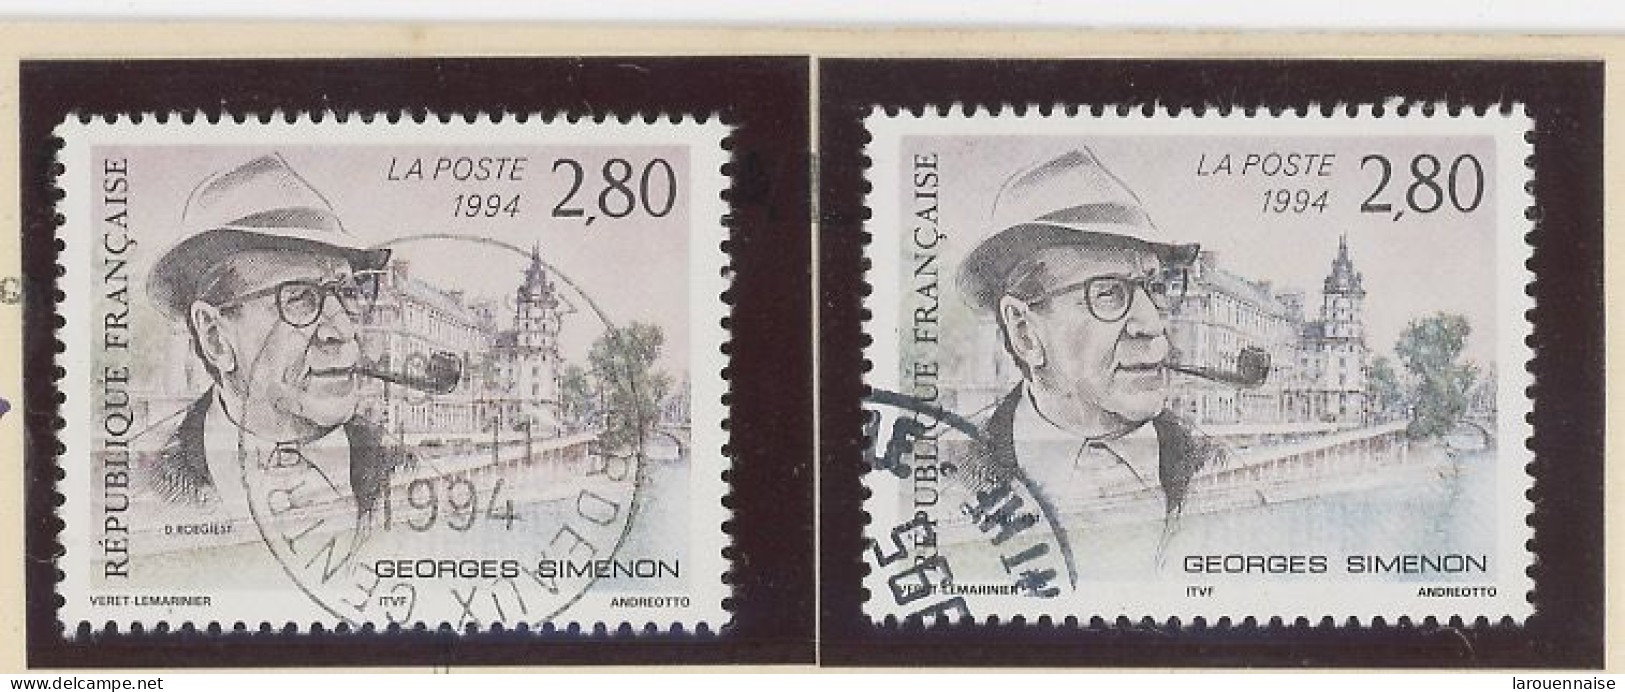 VARIÉTÉ - N° 2911 Obl - GEORGES SIMENON - FOND ROSE AU LIEU DE GRIS LILAS PALE - Used Stamps